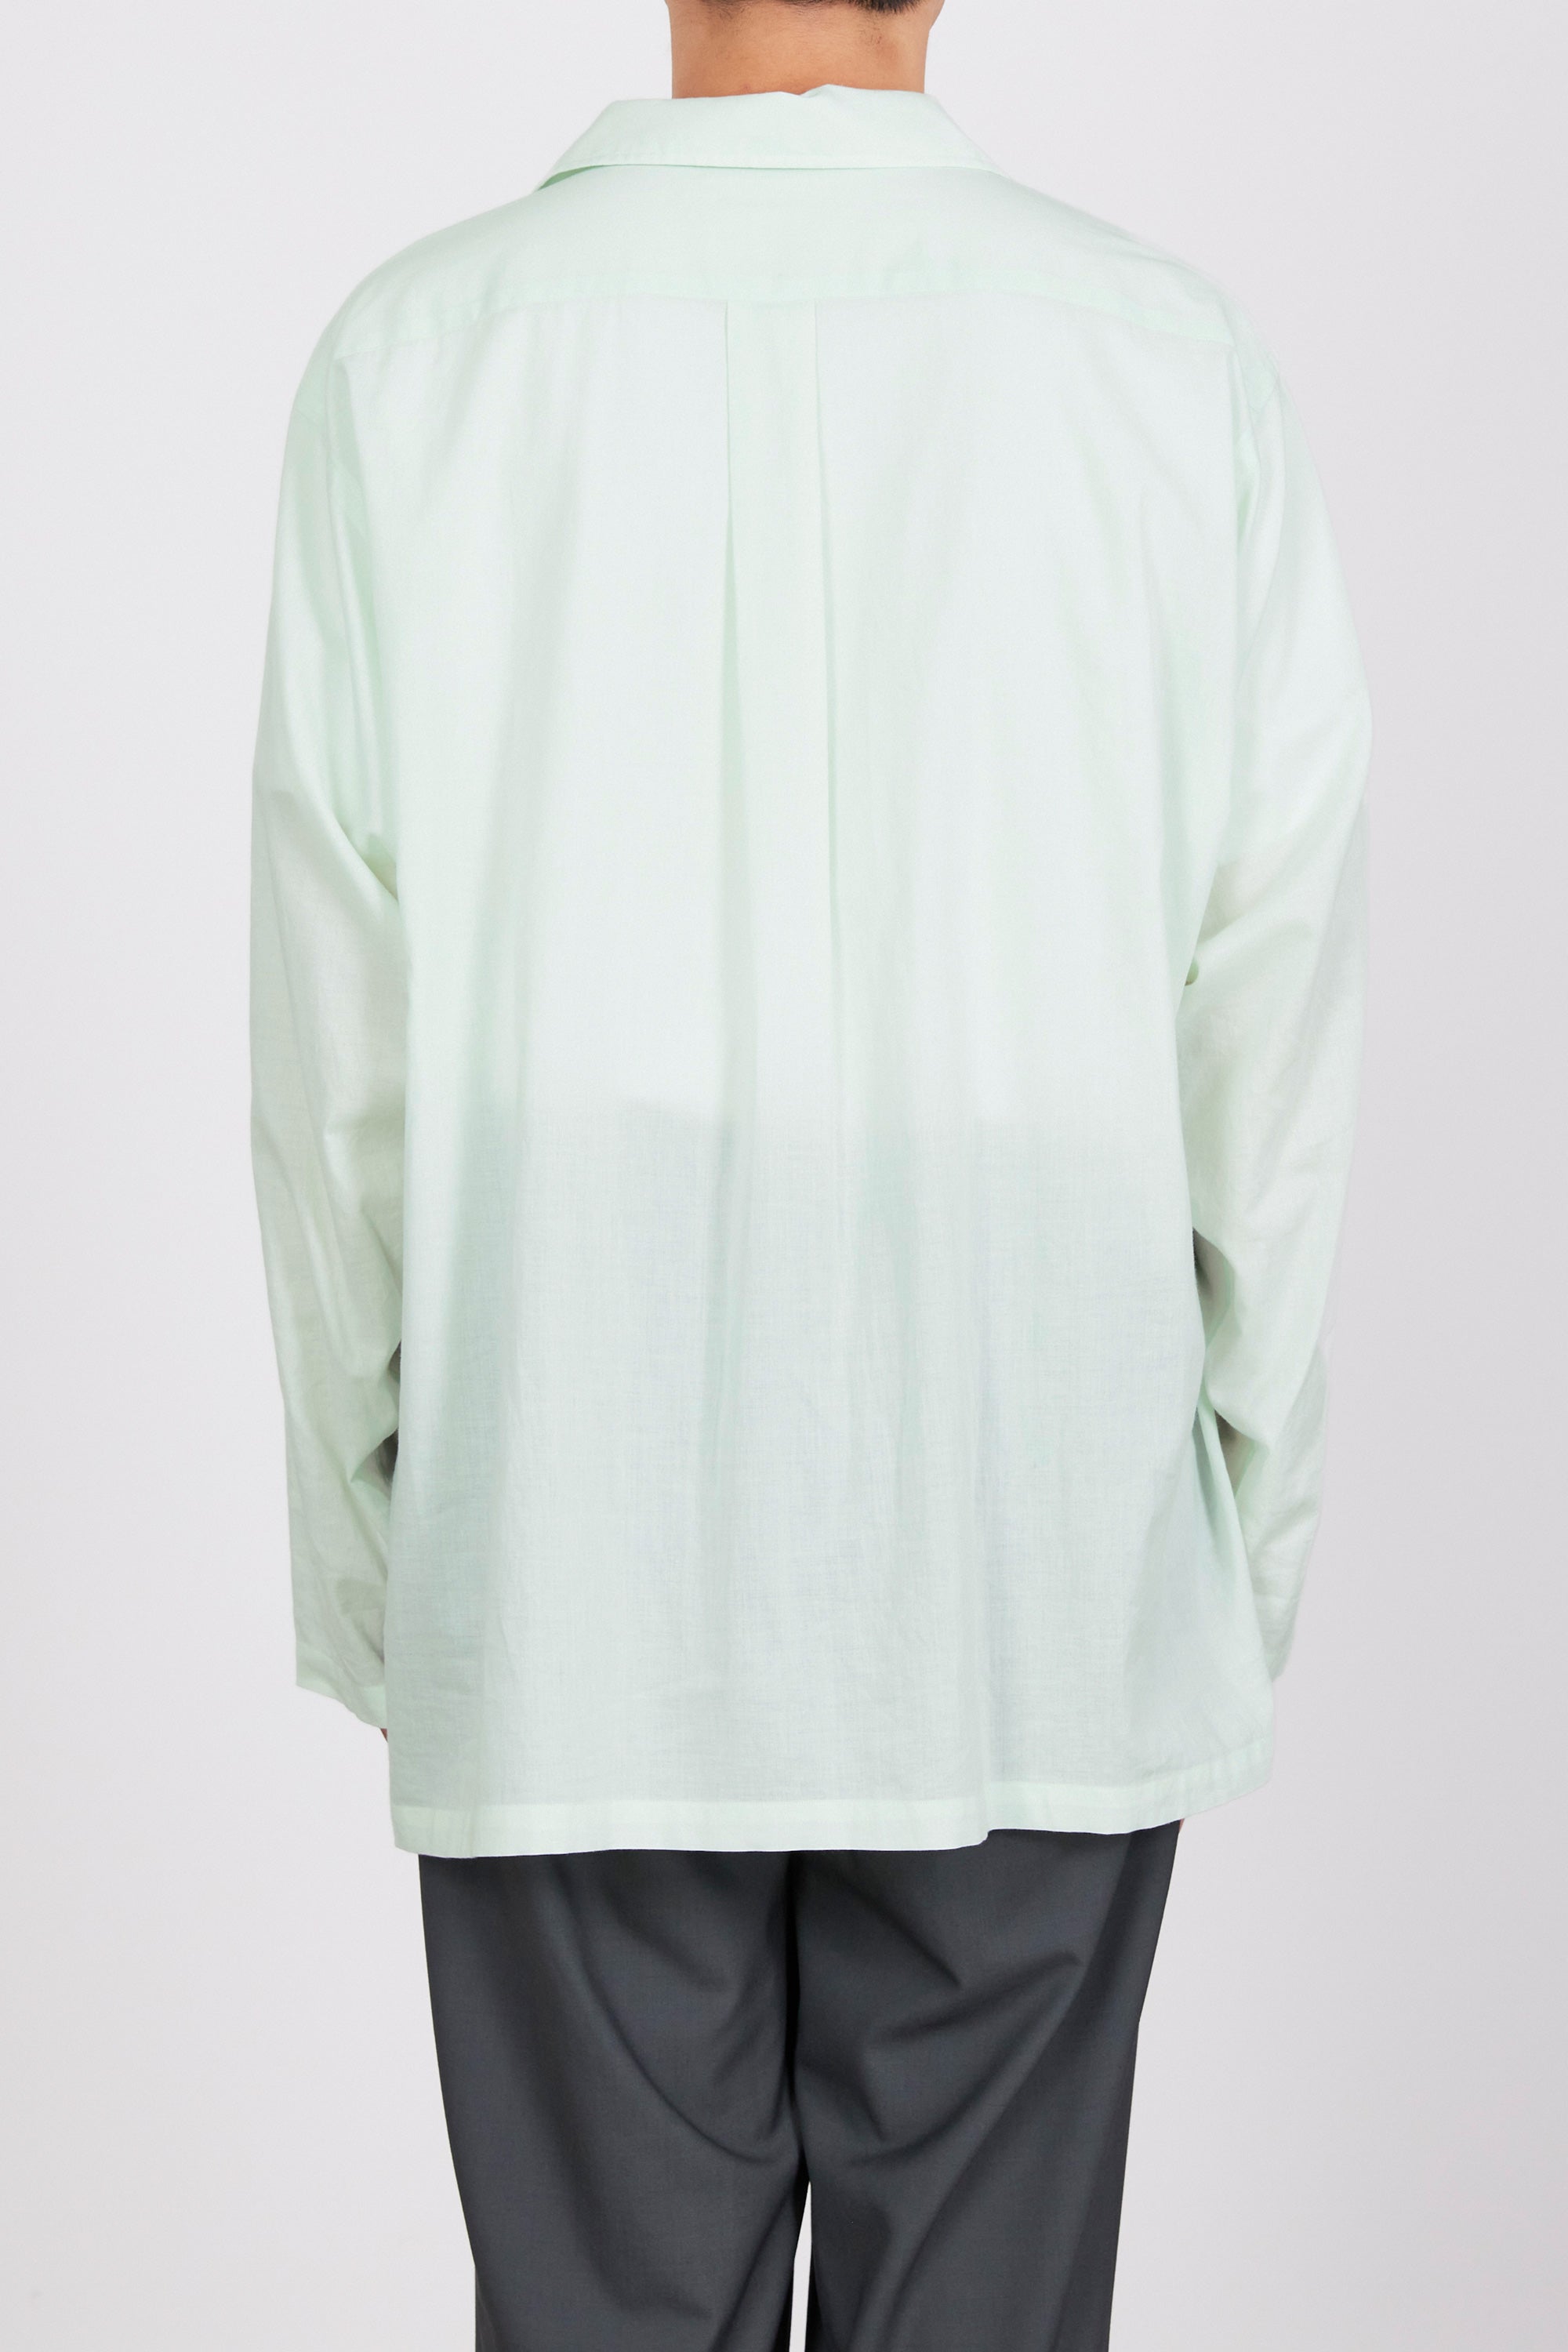 オーガニックペルーピマコットン60/-ローン / オープンカラーシャツ, Green